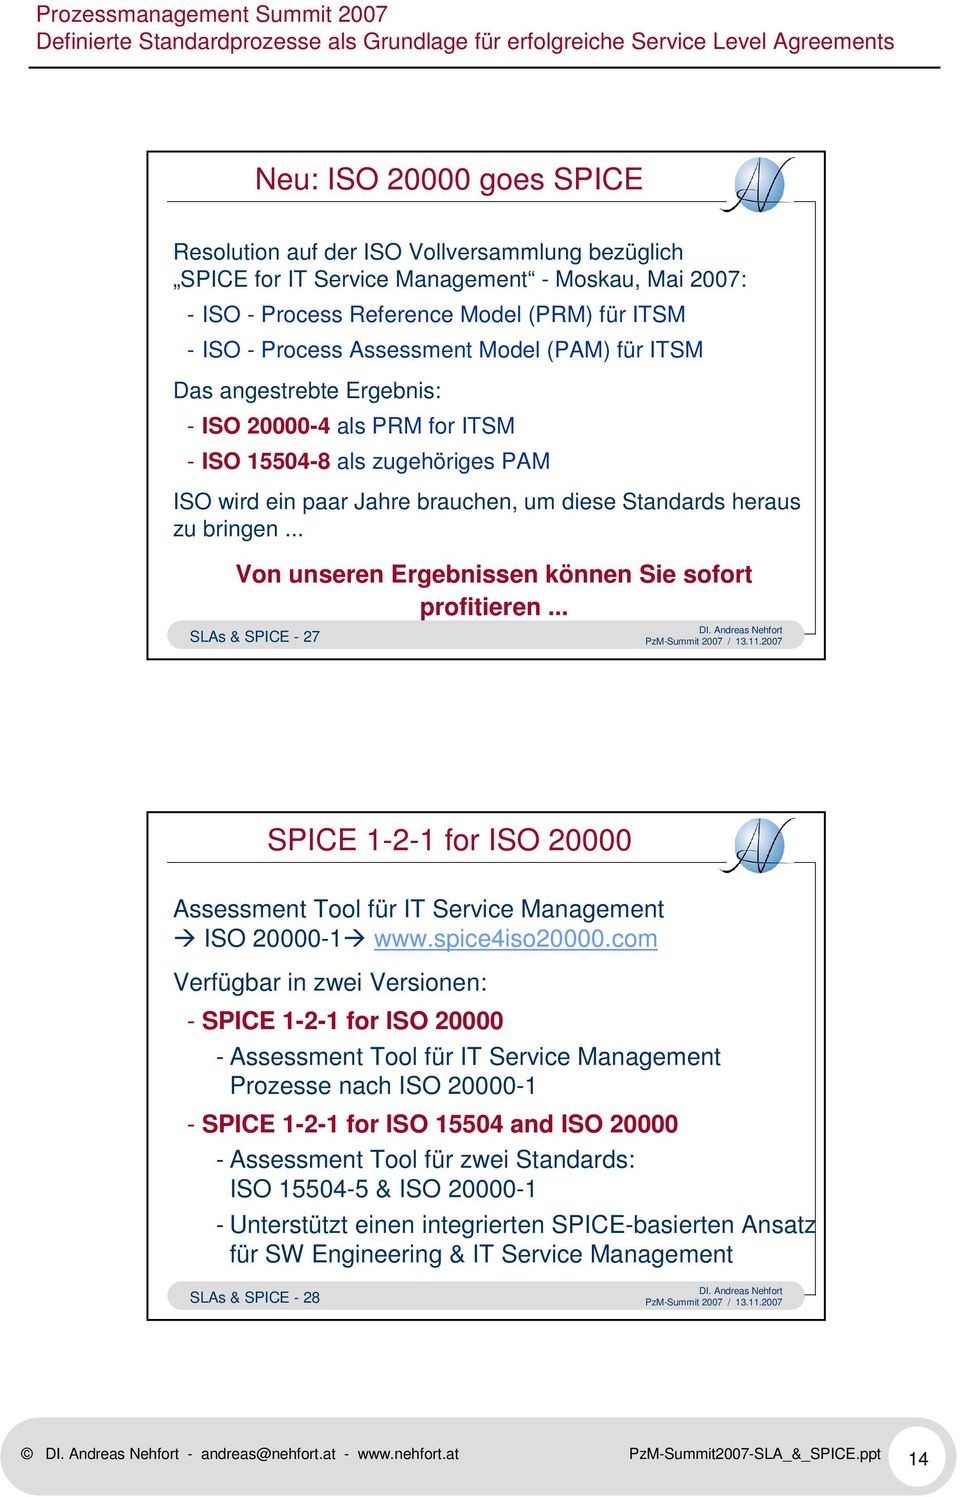 .. Von unseren Ergebnissen können Sie sofort profitieren... SLAs & SPICE - 27 SPICE 1-2-1 for ISO 20000 Assessment Tool für IT Service Management ISO 20000-1 www.spice4iso20000.